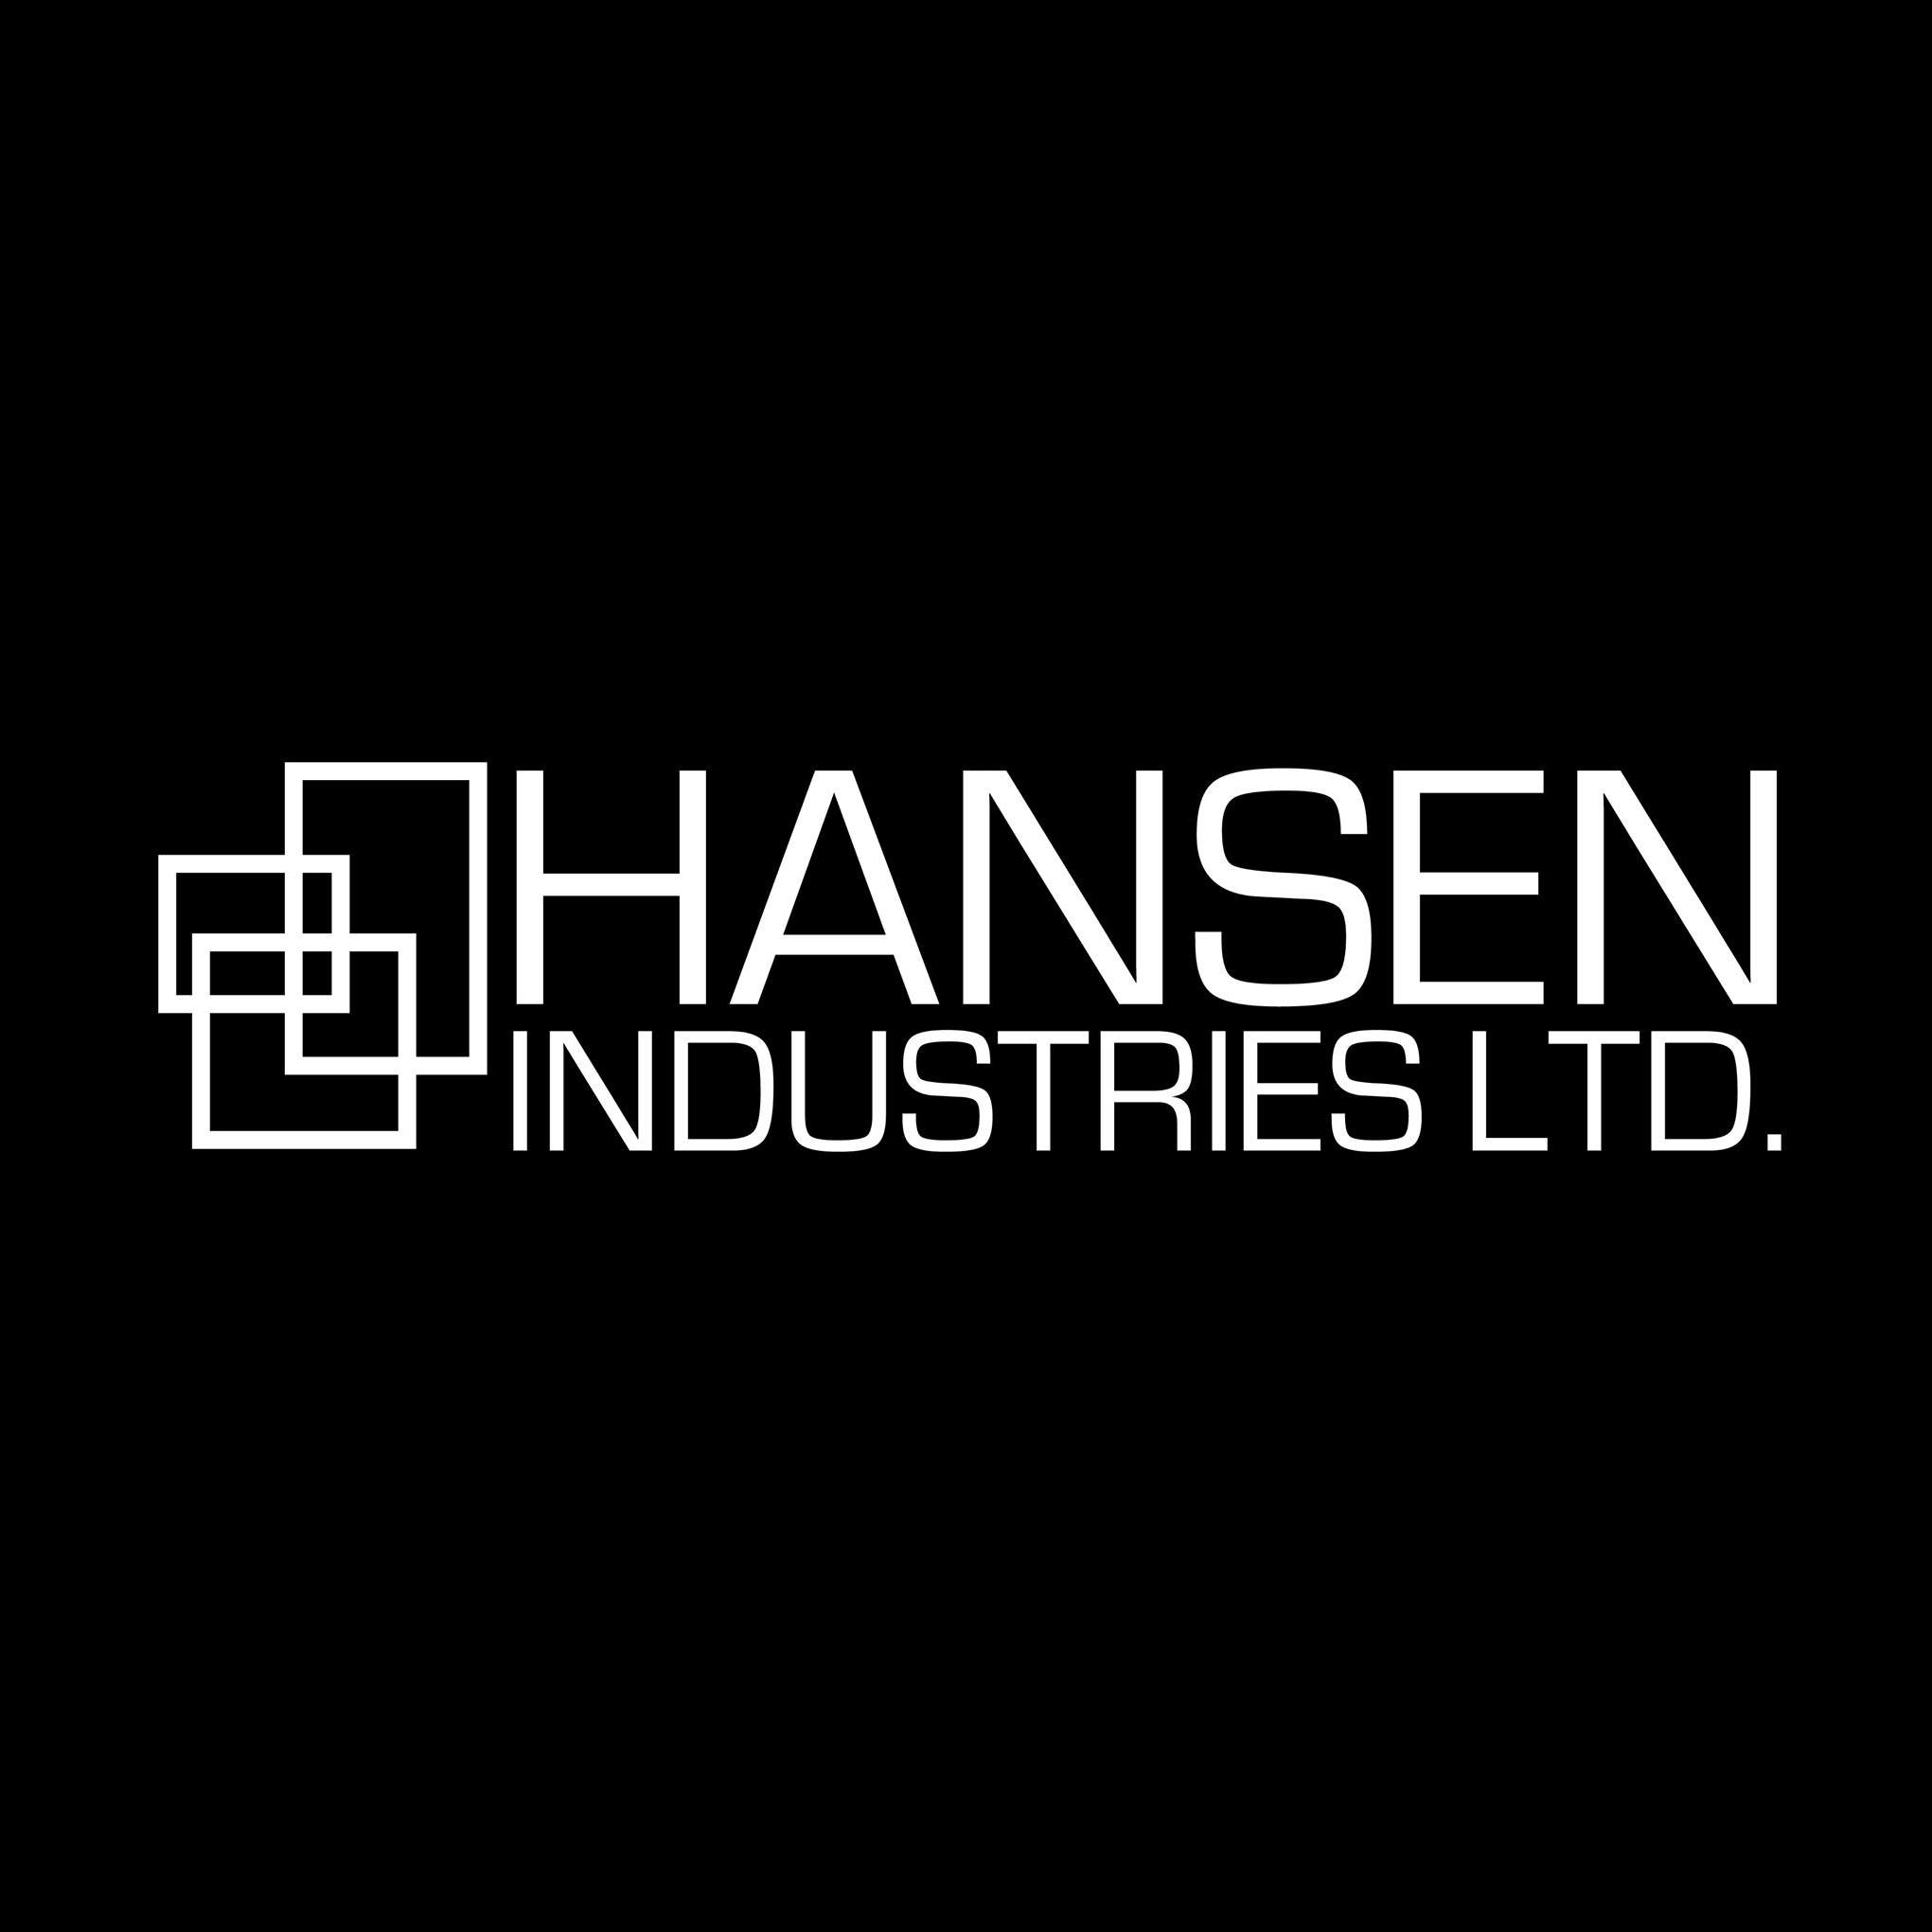 Hansen Industries Ltd.